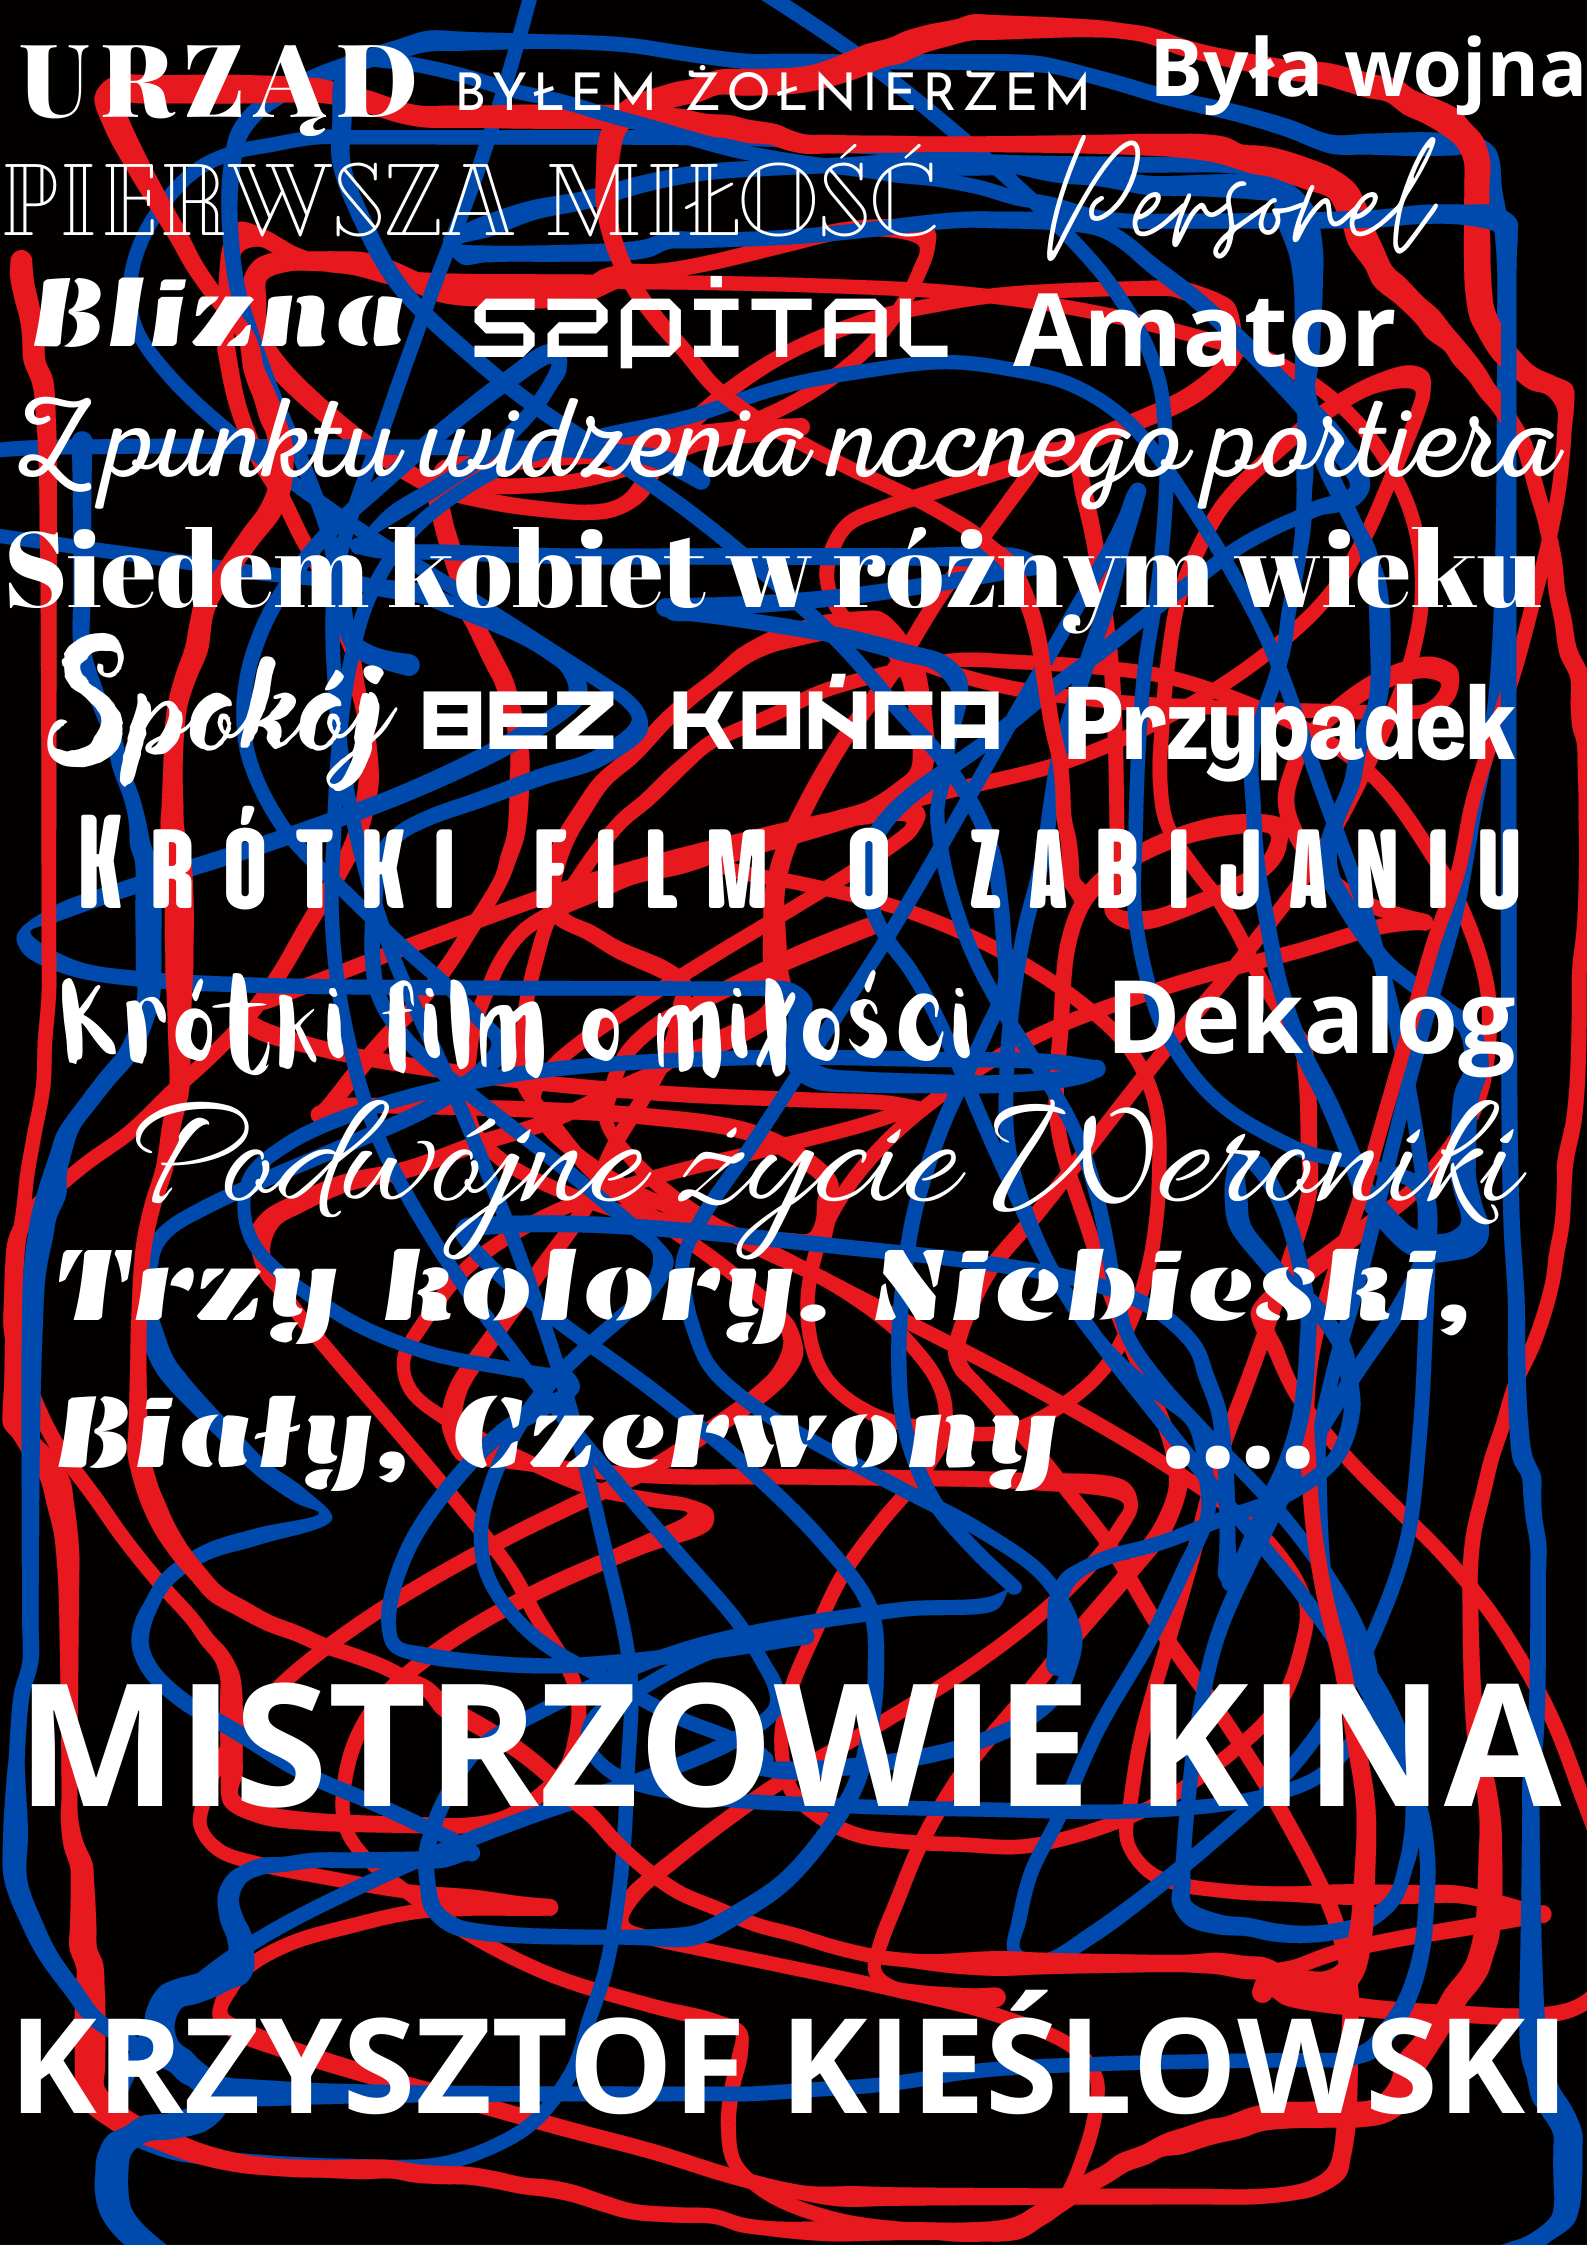 Mistrzowie kina – Krzysztof Kieślowski